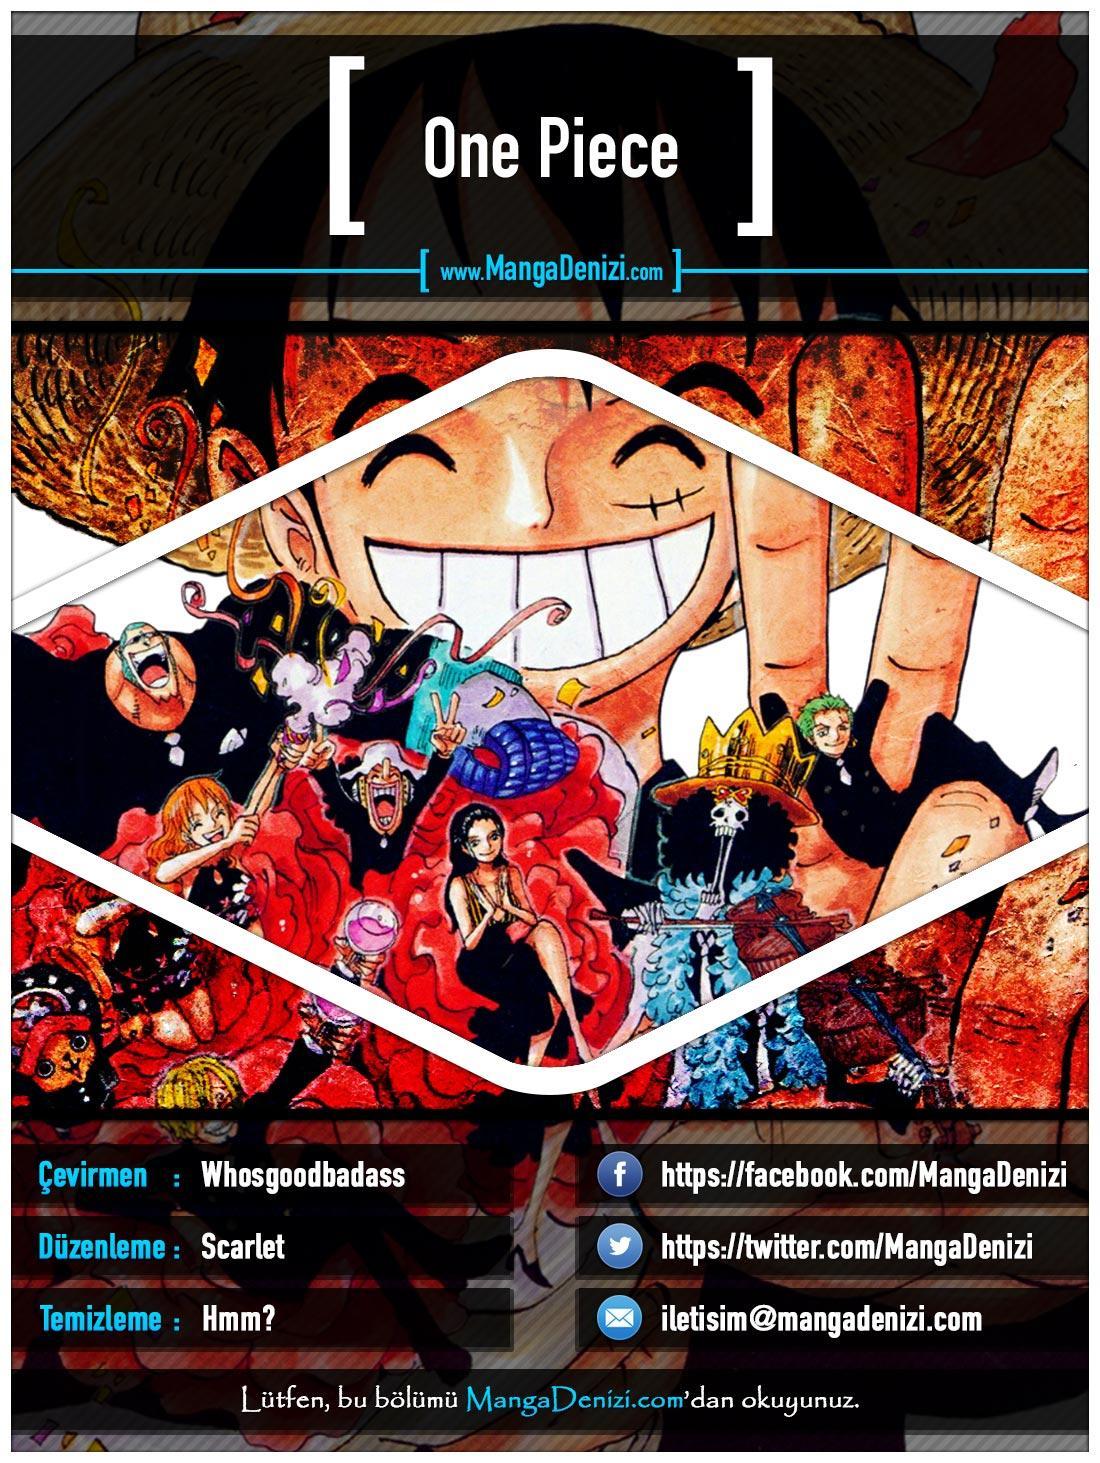 One Piece [Renkli] mangasının 0634 bölümünün 1. sayfasını okuyorsunuz.